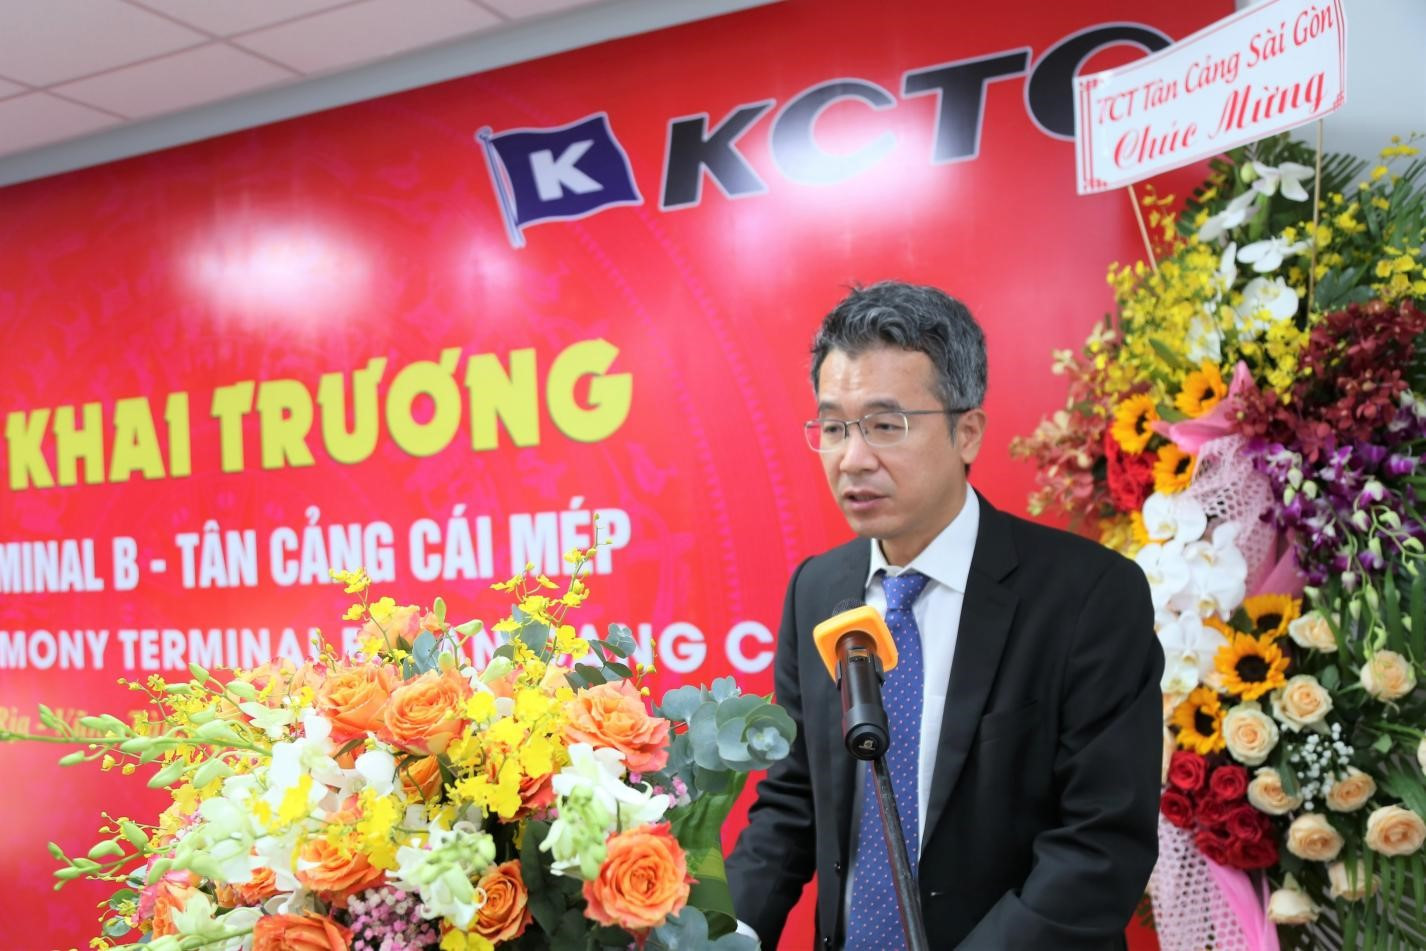 Ông Kim Yong Chul, đại diện Tham tán Hải quan Hàn Quốc tại Việt Nam tin rằng, khi Terminal B-Tân Cảng Cái Mép đi vào hoạt động  sẽ hỗ trợ cho hoạt động xuất, nhập khẩu hàng hóa trở nên thuận tiện hơn